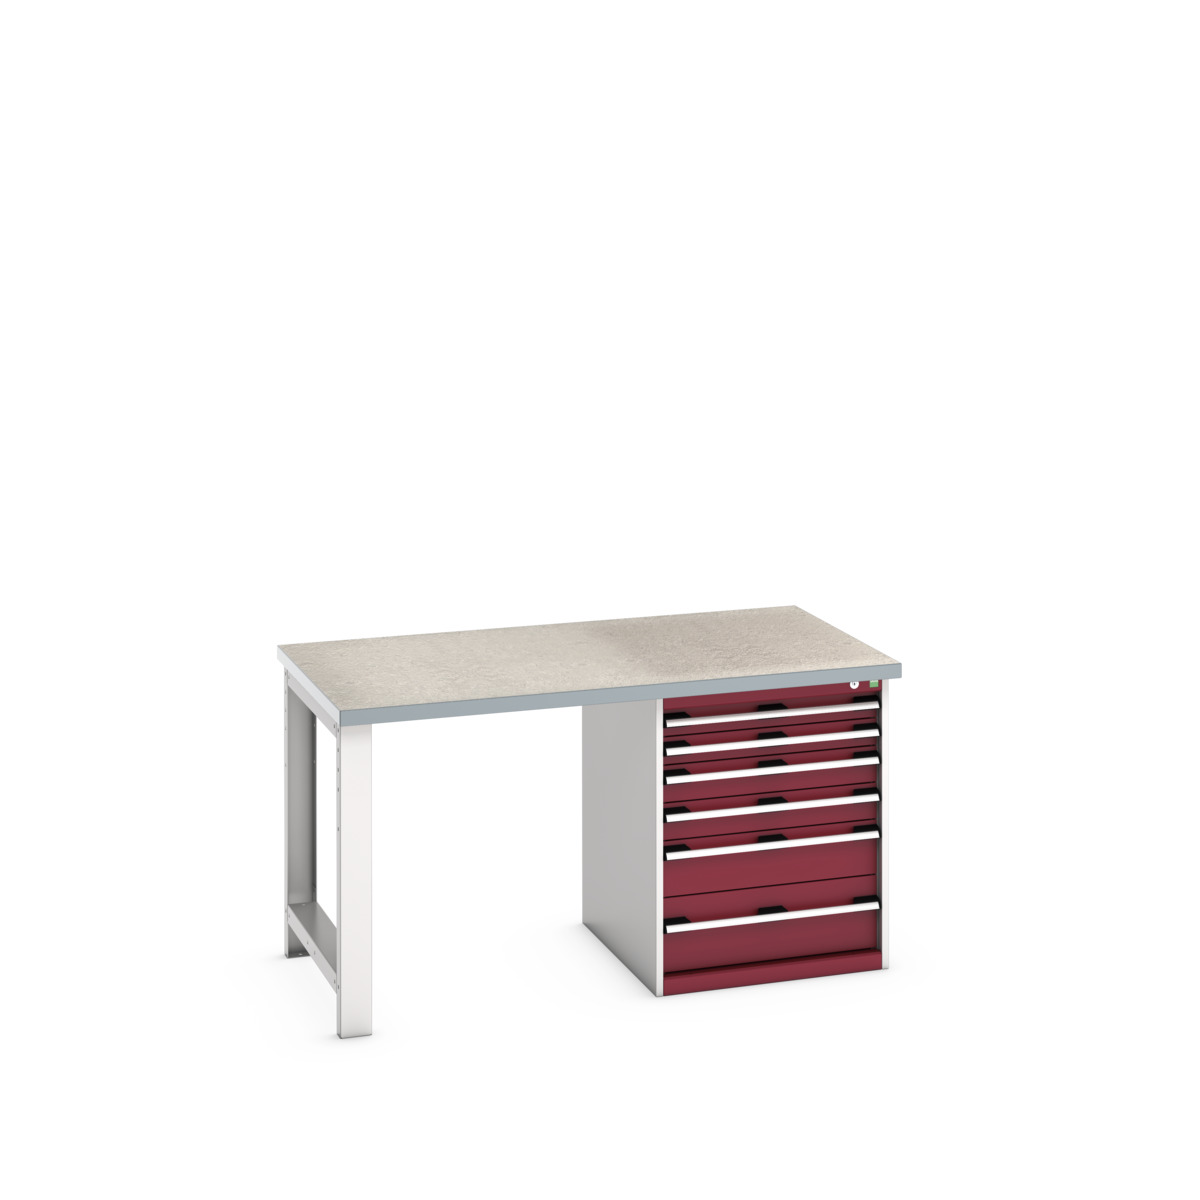 41004114.24V - cubio pedestal bench (lino)